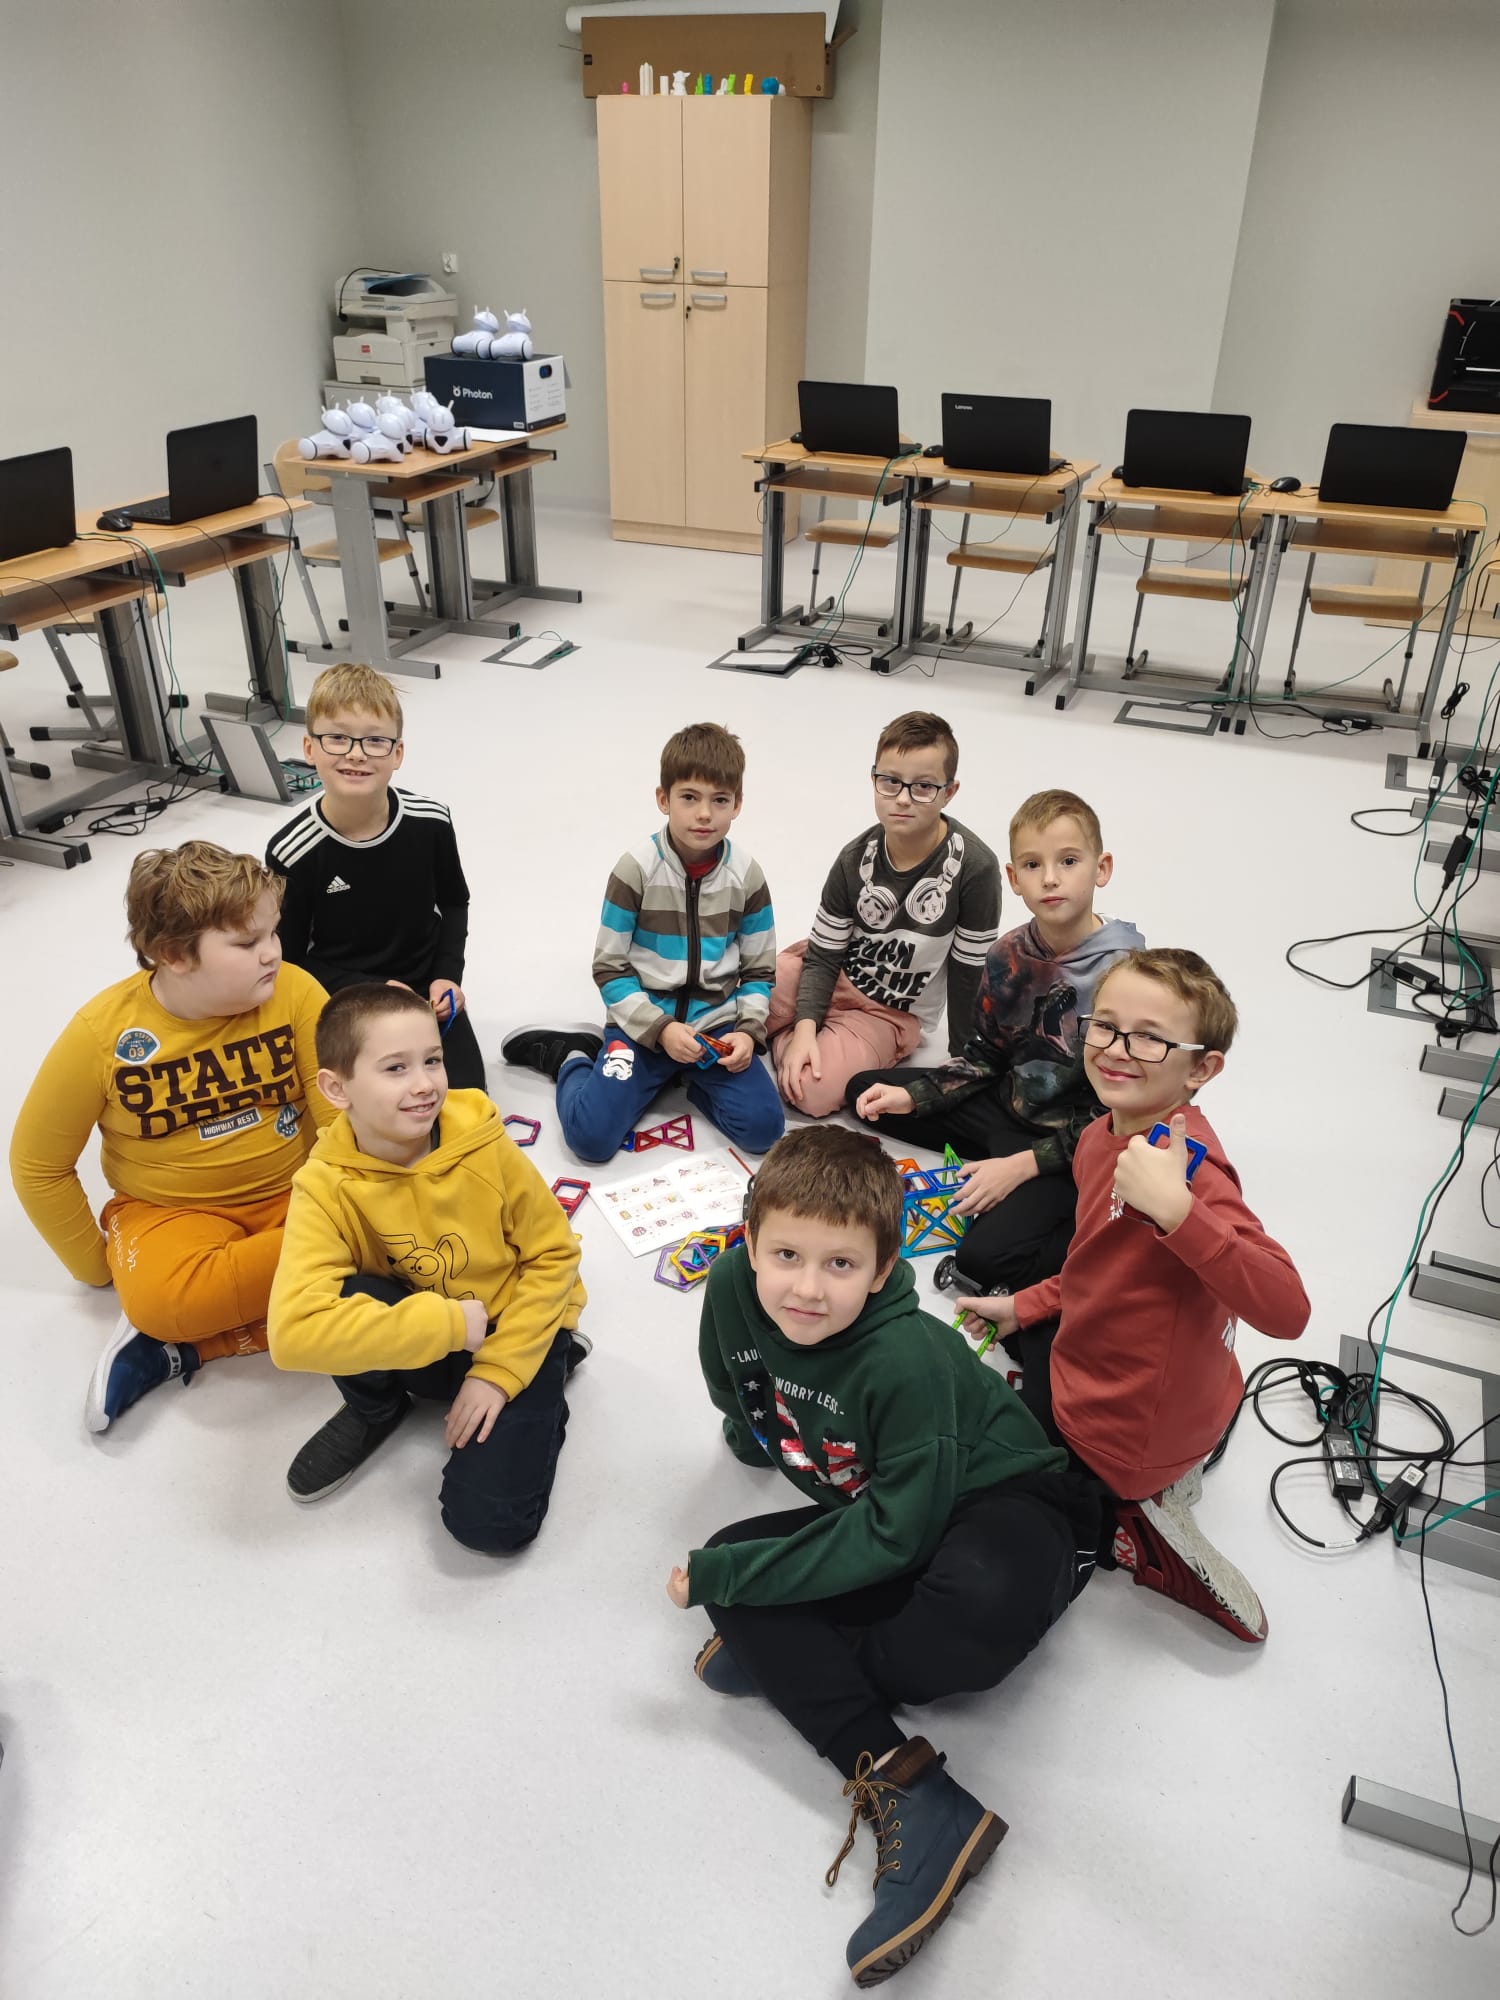 Ośmiu chłopców siedzi na podłodze i pozuje do zdjęcia na tle konstrukcji z klocków edukacyjnych